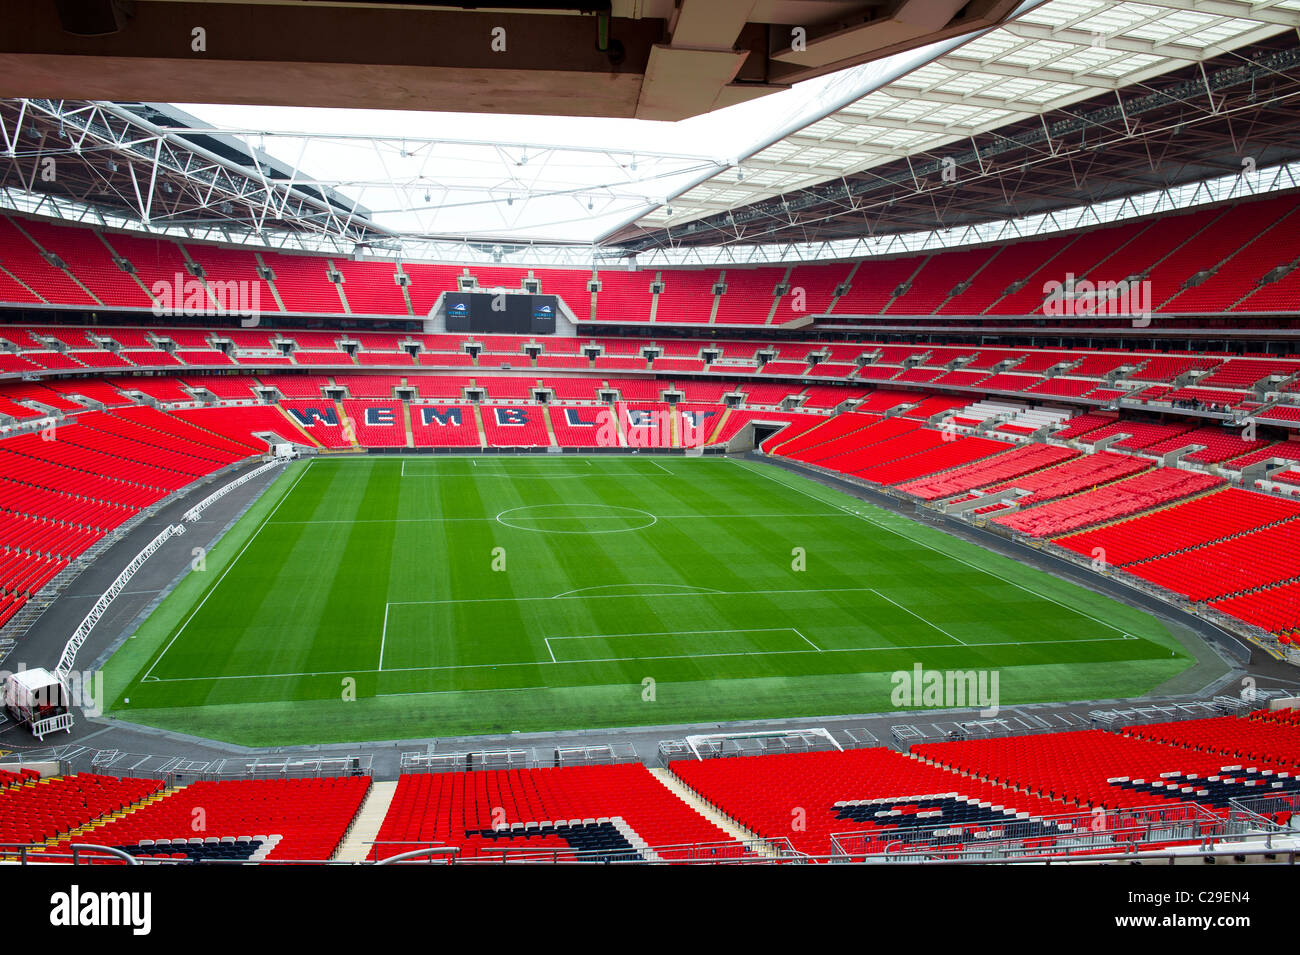 Estadio de fútbol Wembley vacío Foto de stock